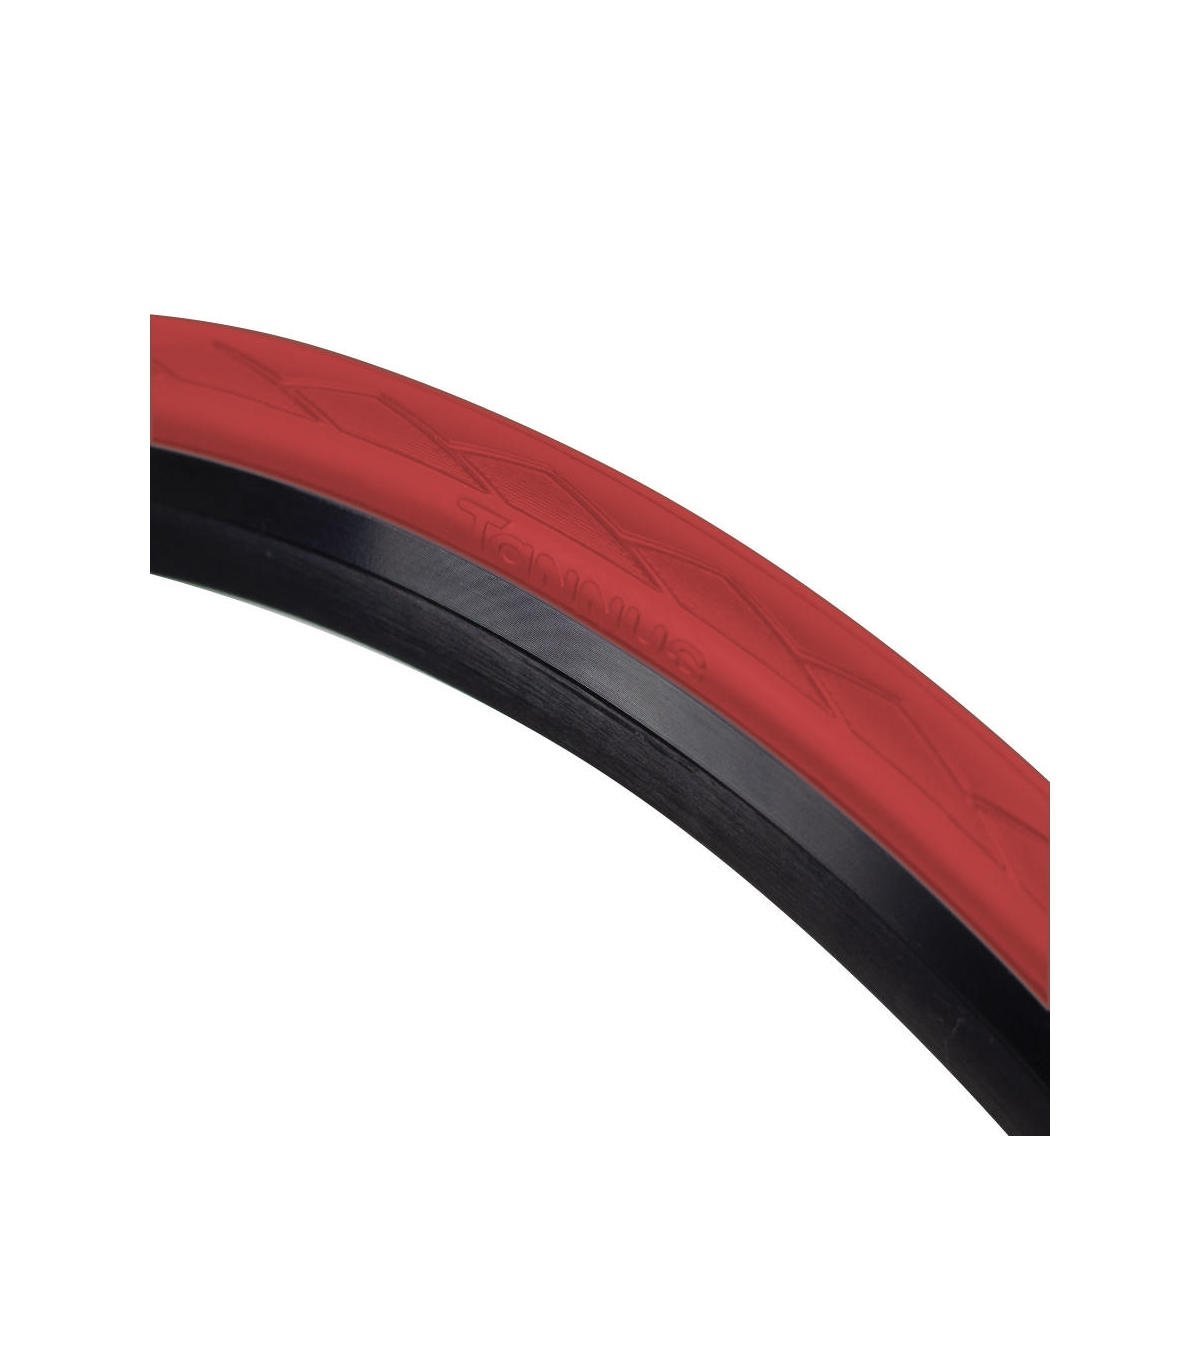 Cubierta Semi Slick 700 * 28c (28-622) Hard Tannus Airless Tire - rojo - 